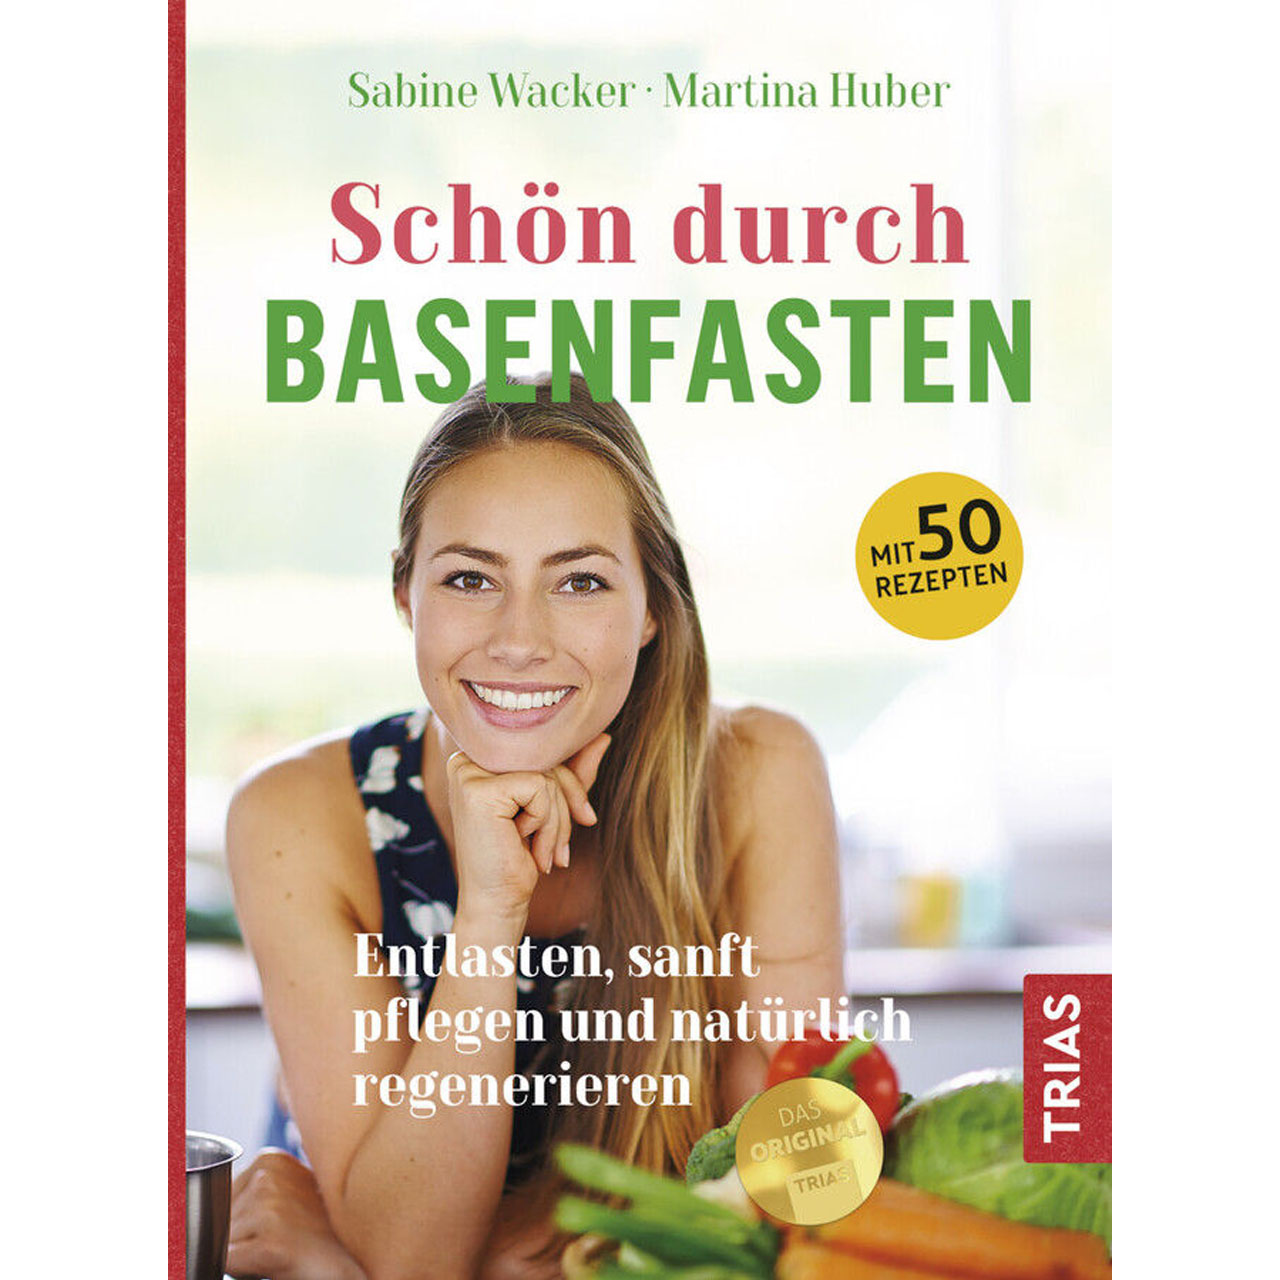 Schön durch basenfasten von Sabine Wacker und Martina Huber, TRIAS-Verlag